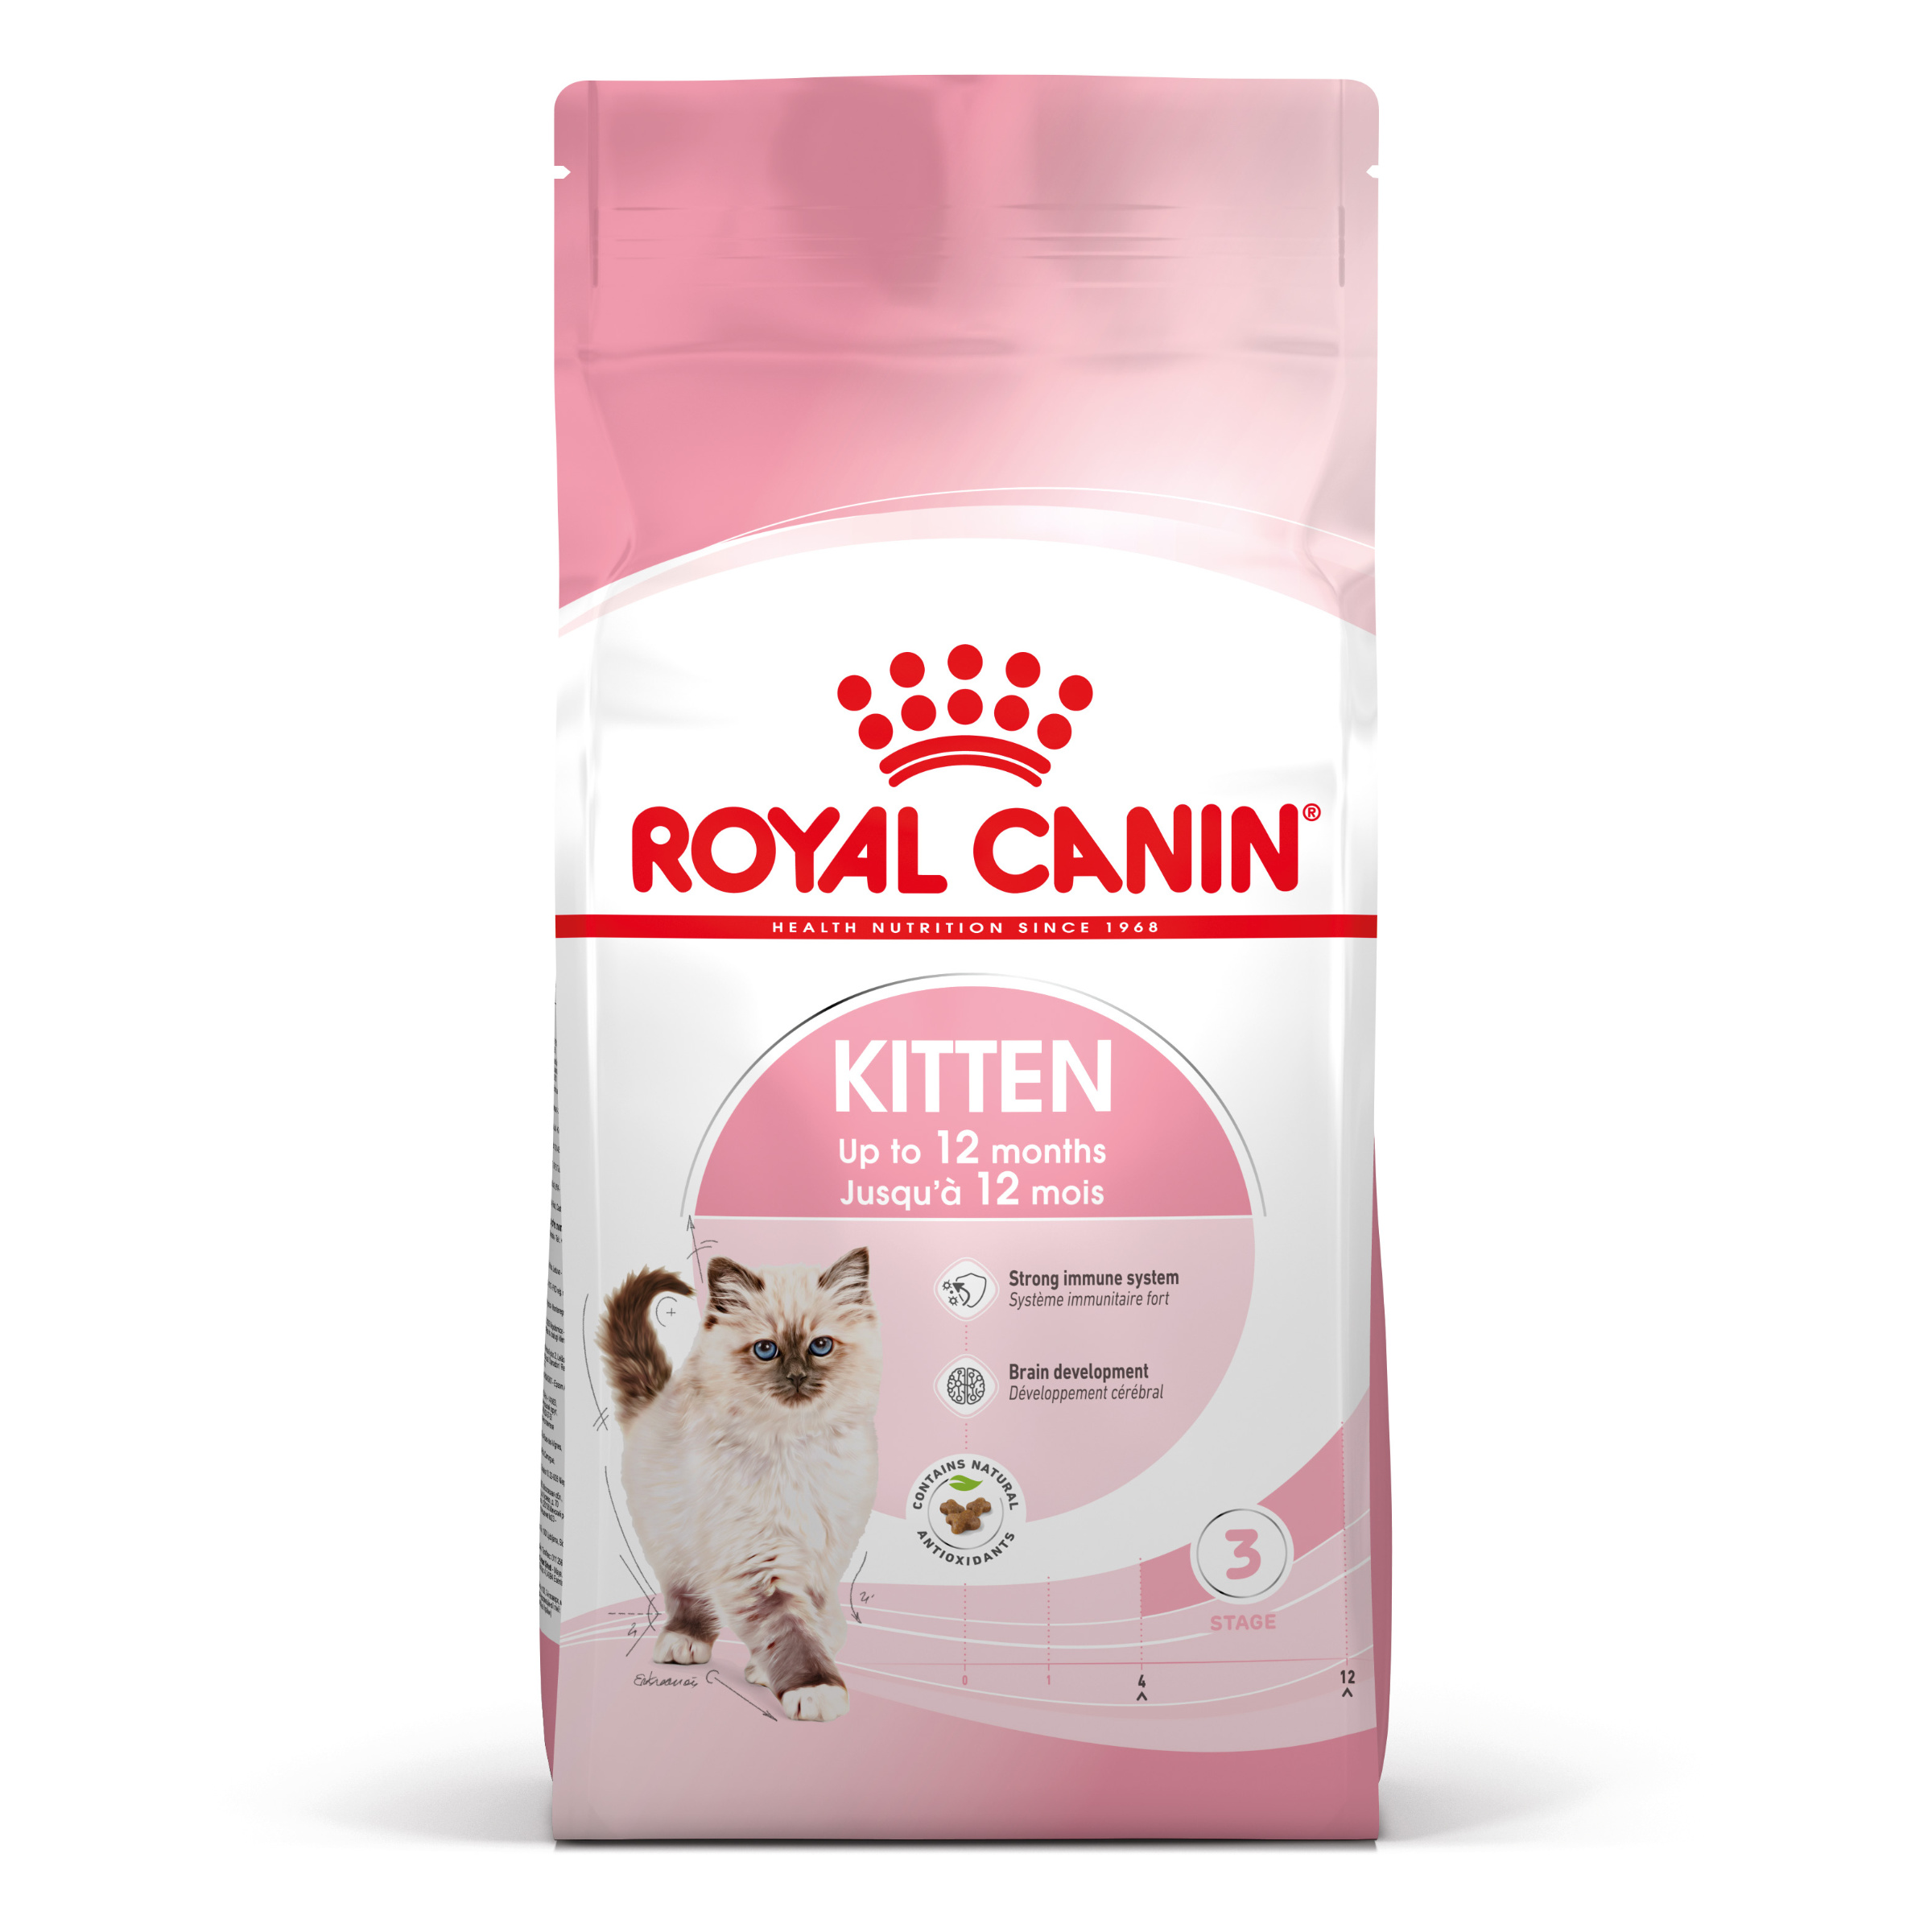 Royal Canin Kitten - Aliment pour chats - Spécial chatons. 2ème âge (jusqu'à 12 mois) - 2kg